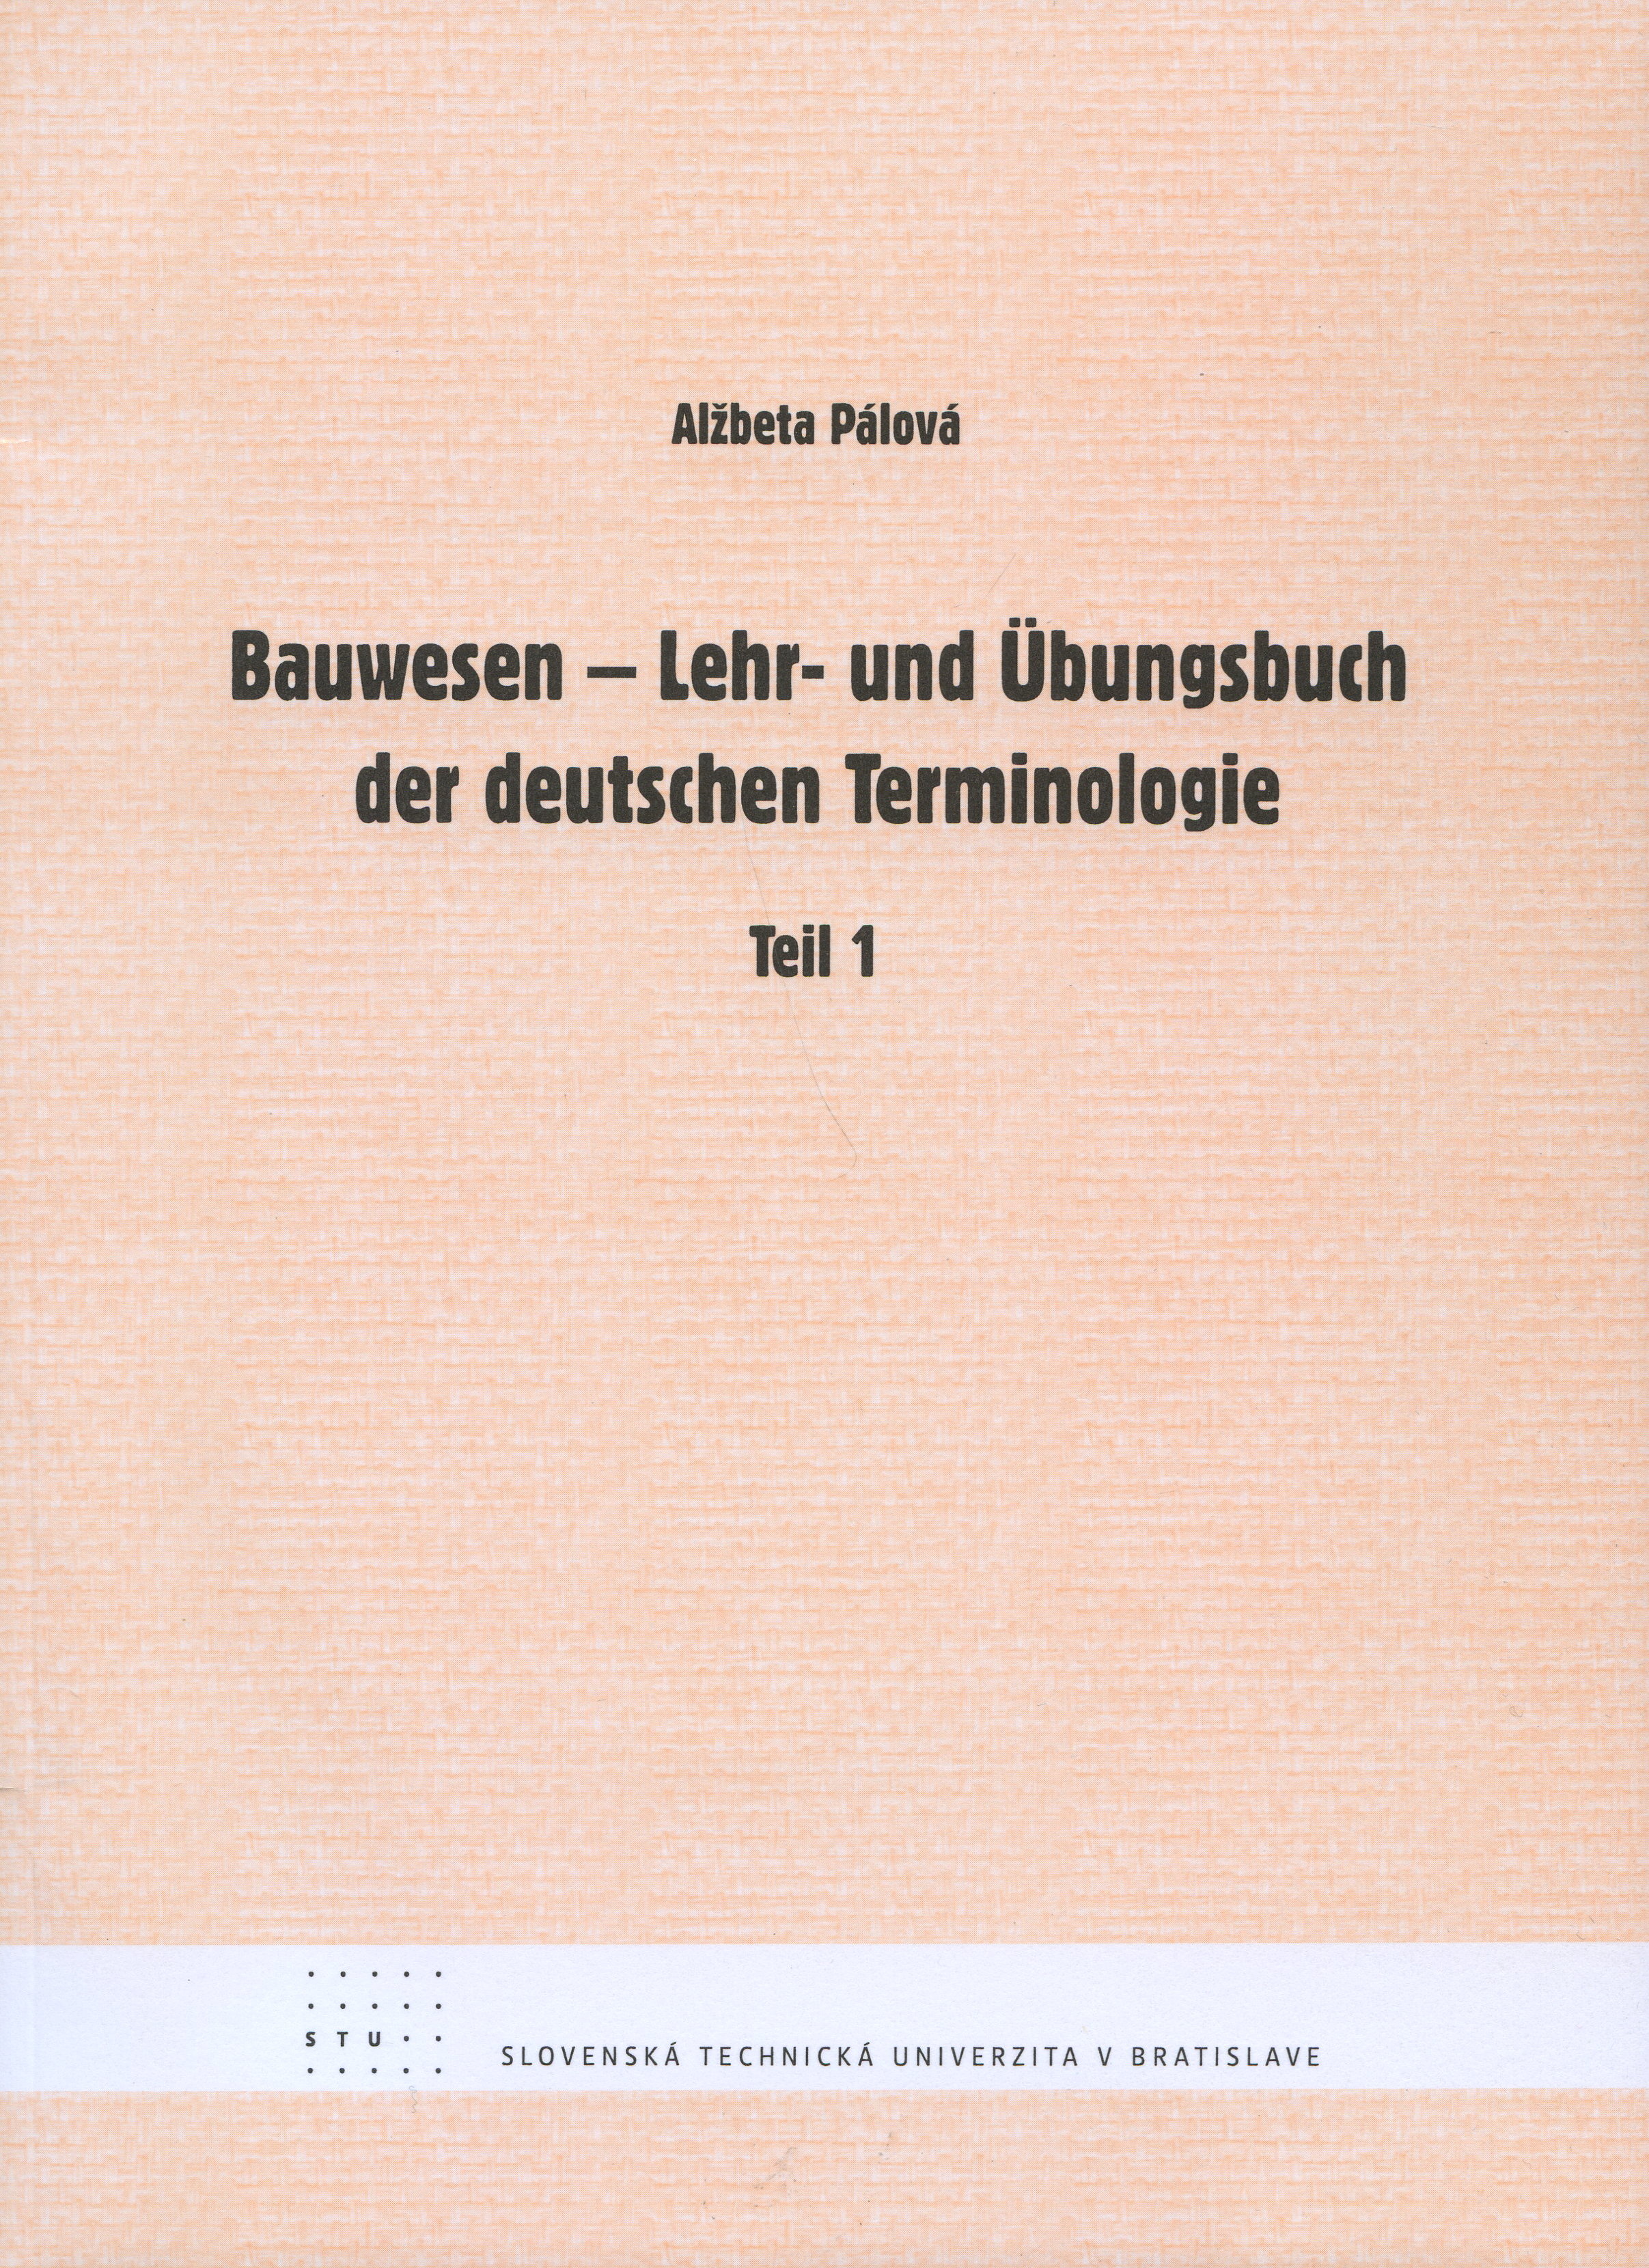 Bauwesen - Lehr- und Ubungsbuch der deutschen Terminologie